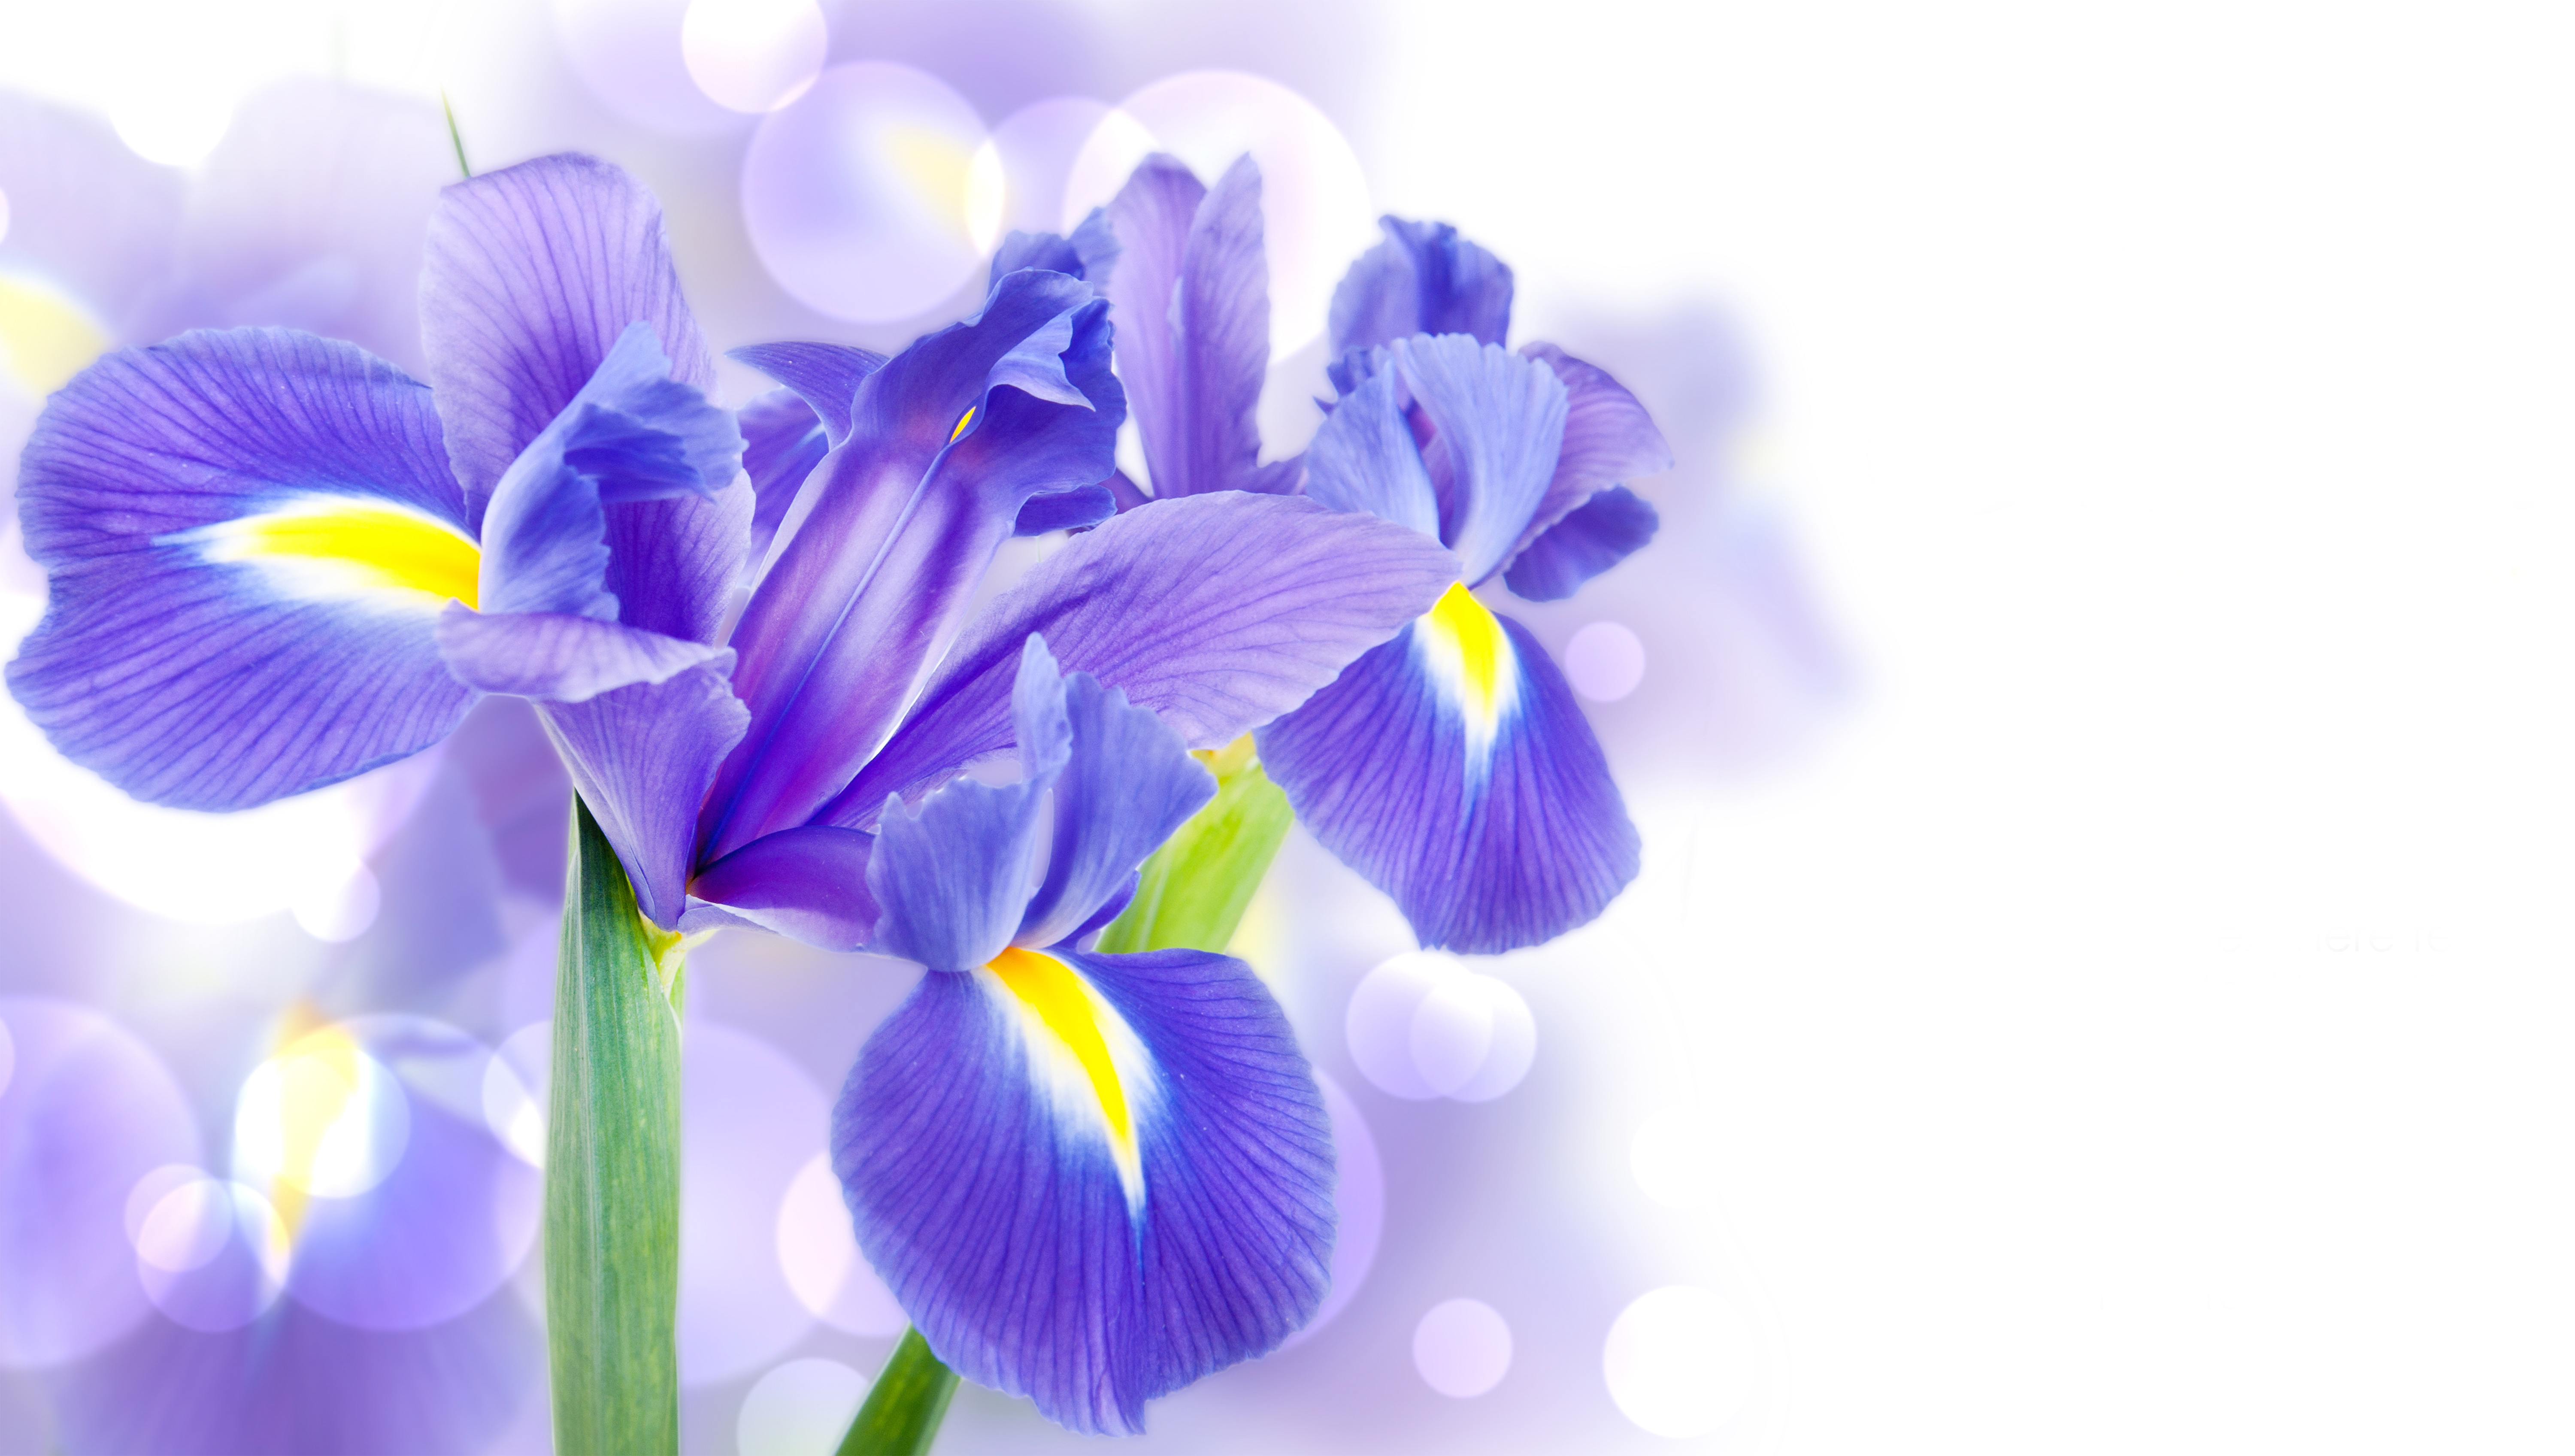 Iris flower HD wallpapers | Pxfuel